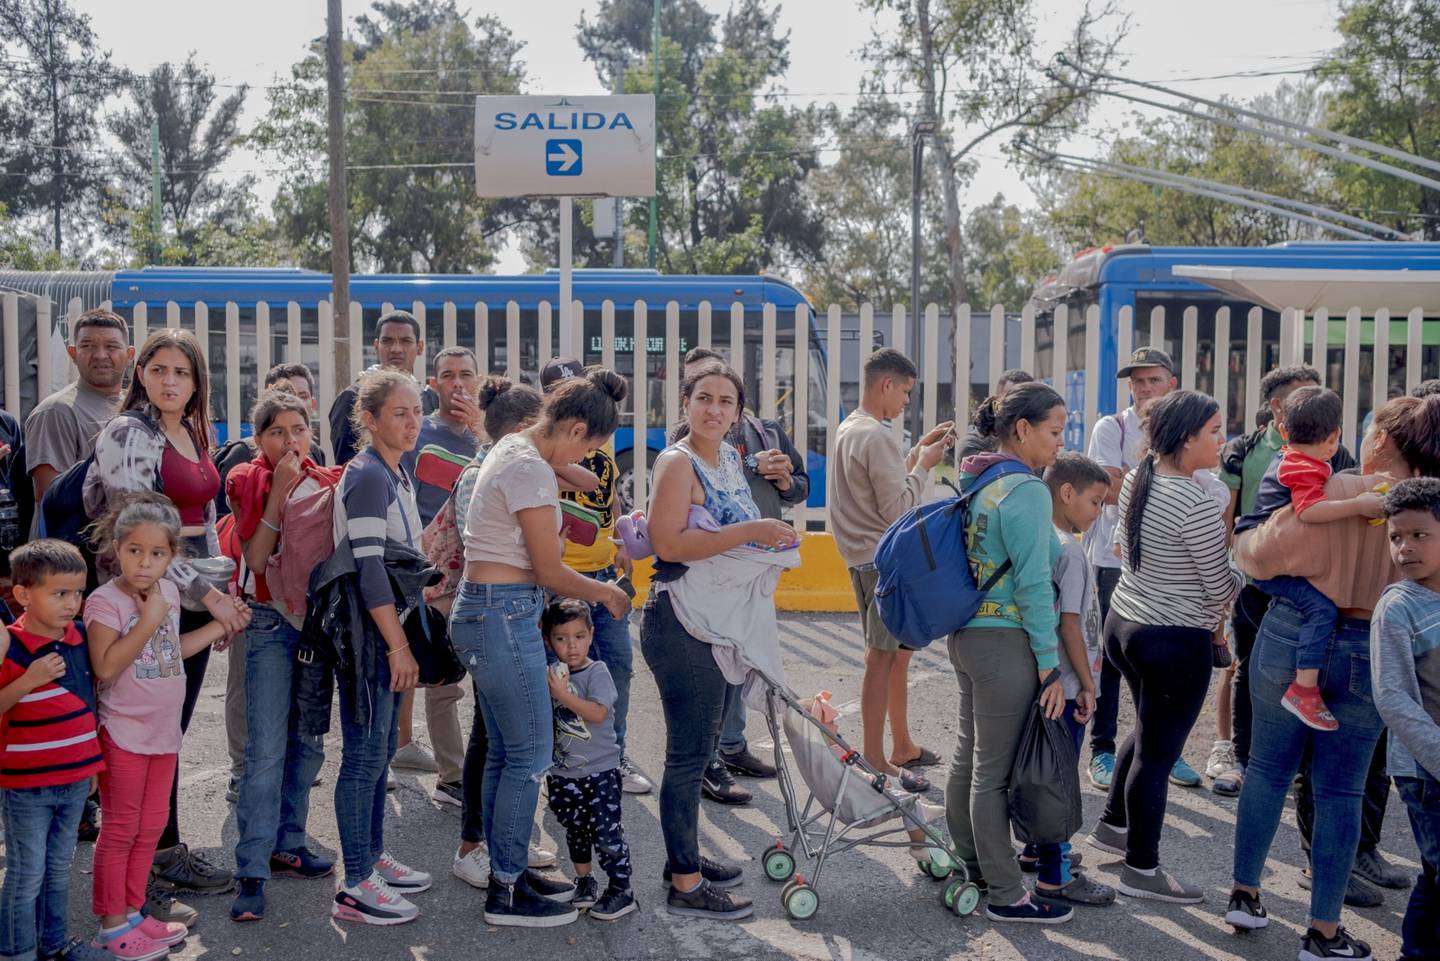 Estados Unidos expulsa a los venezolanos a México bajo nuevas reglas